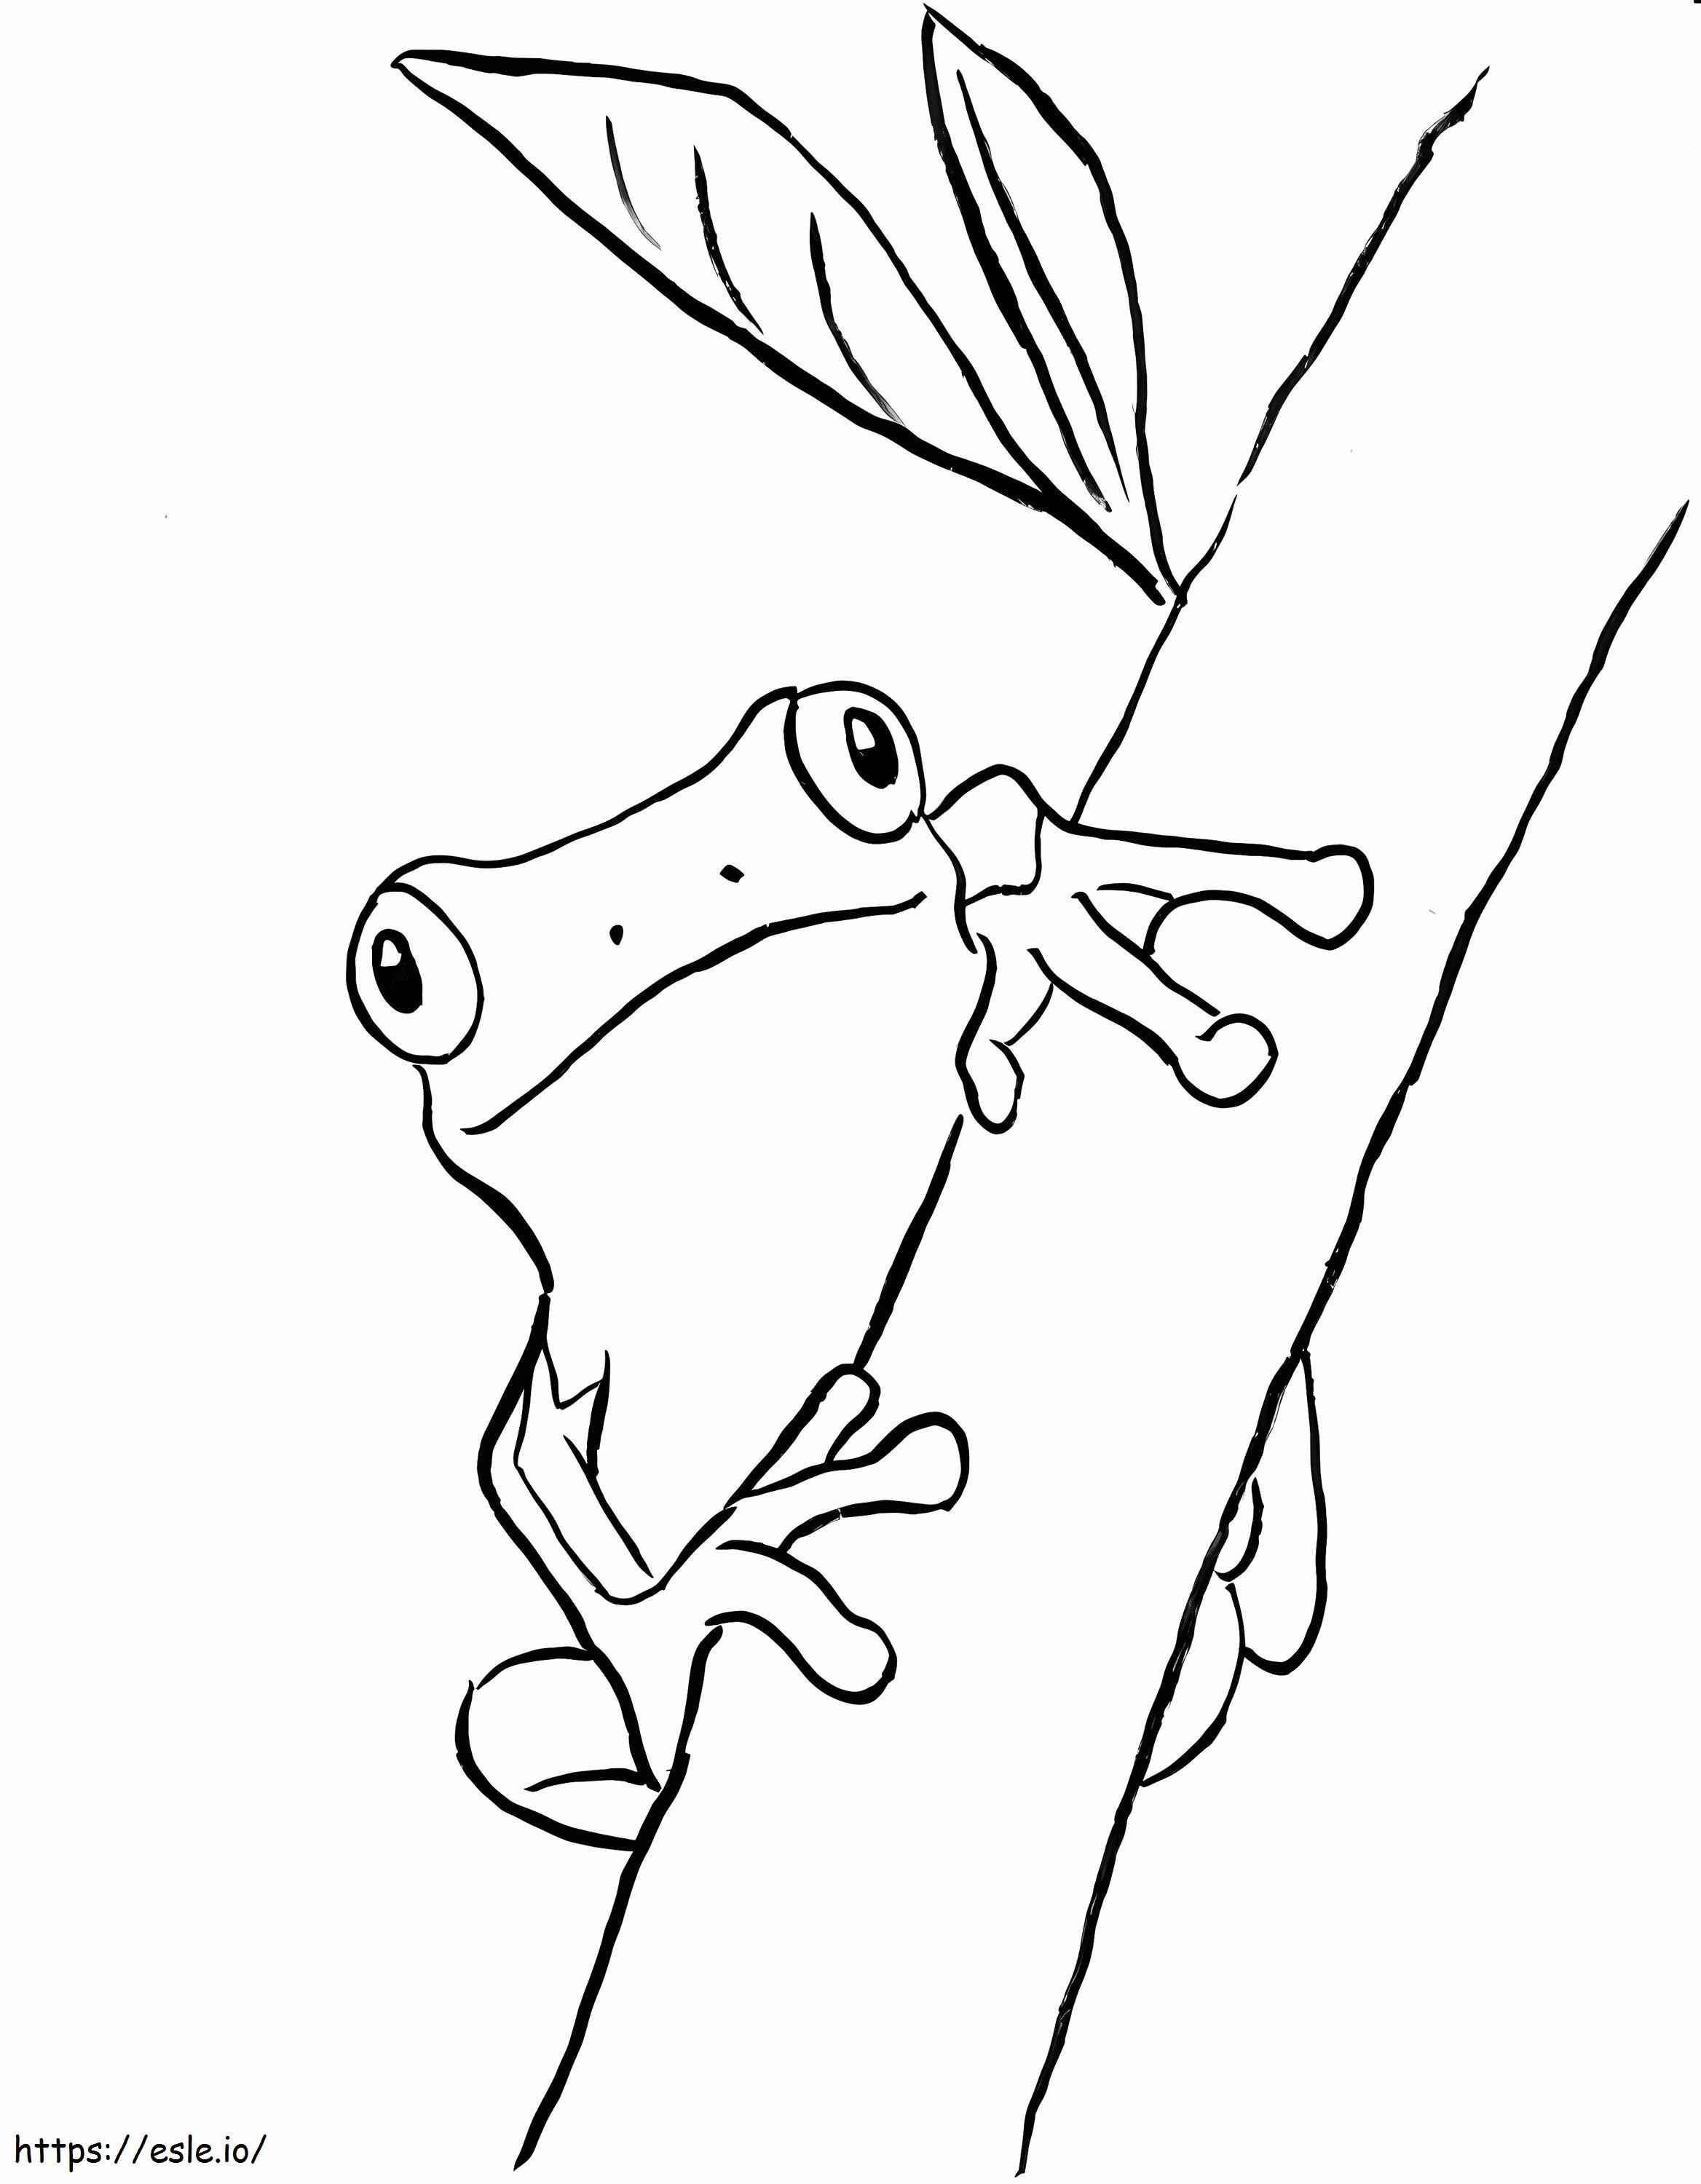 Żaba wspinająca się po gałęziach drzewa kolorowanka